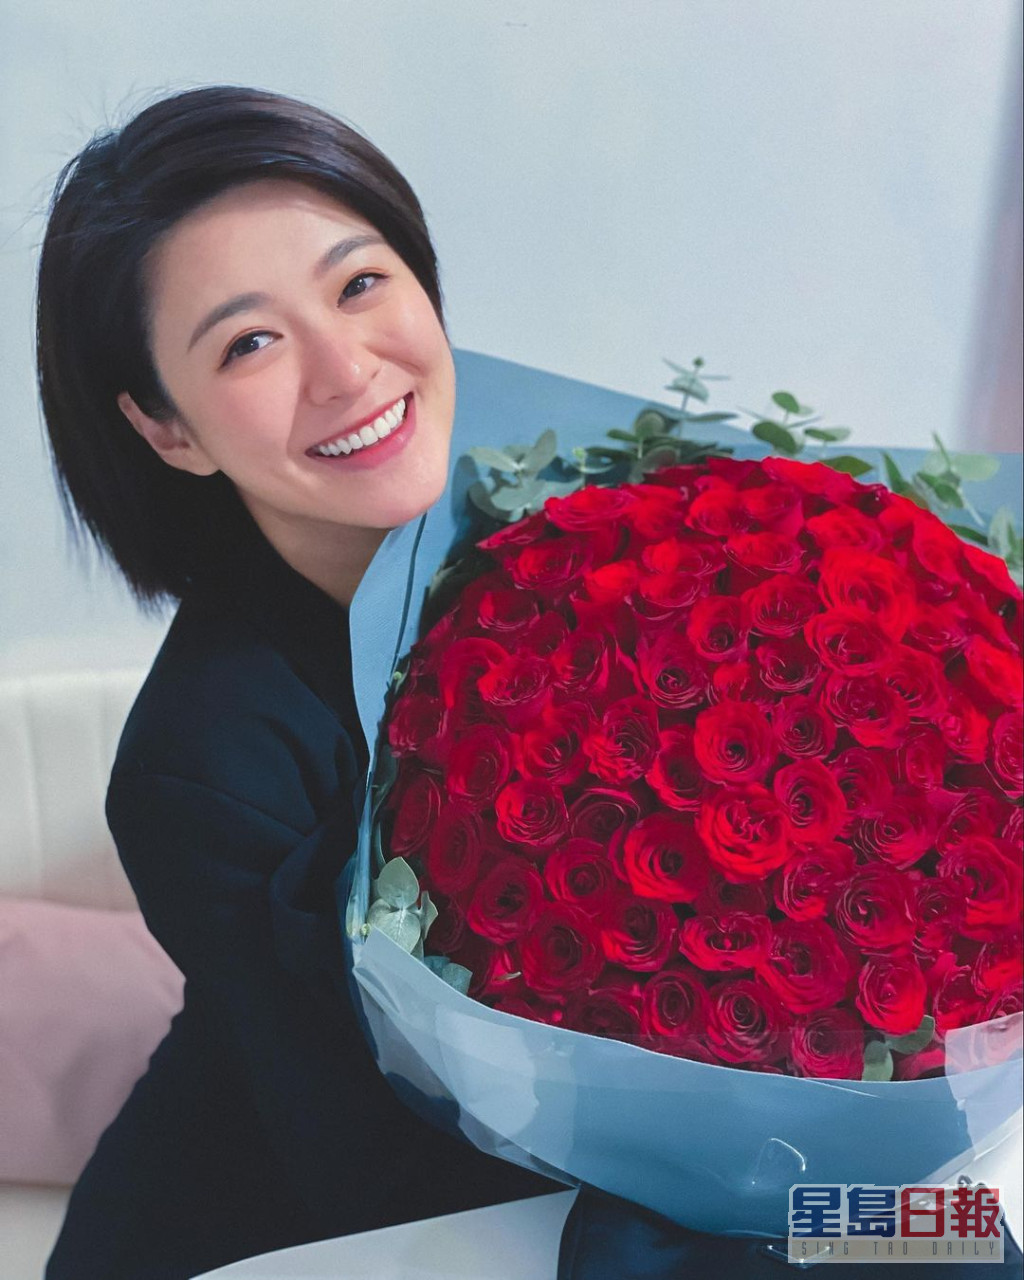 網民都好奇紮玫瑰係邊個送畀江嘉敏。